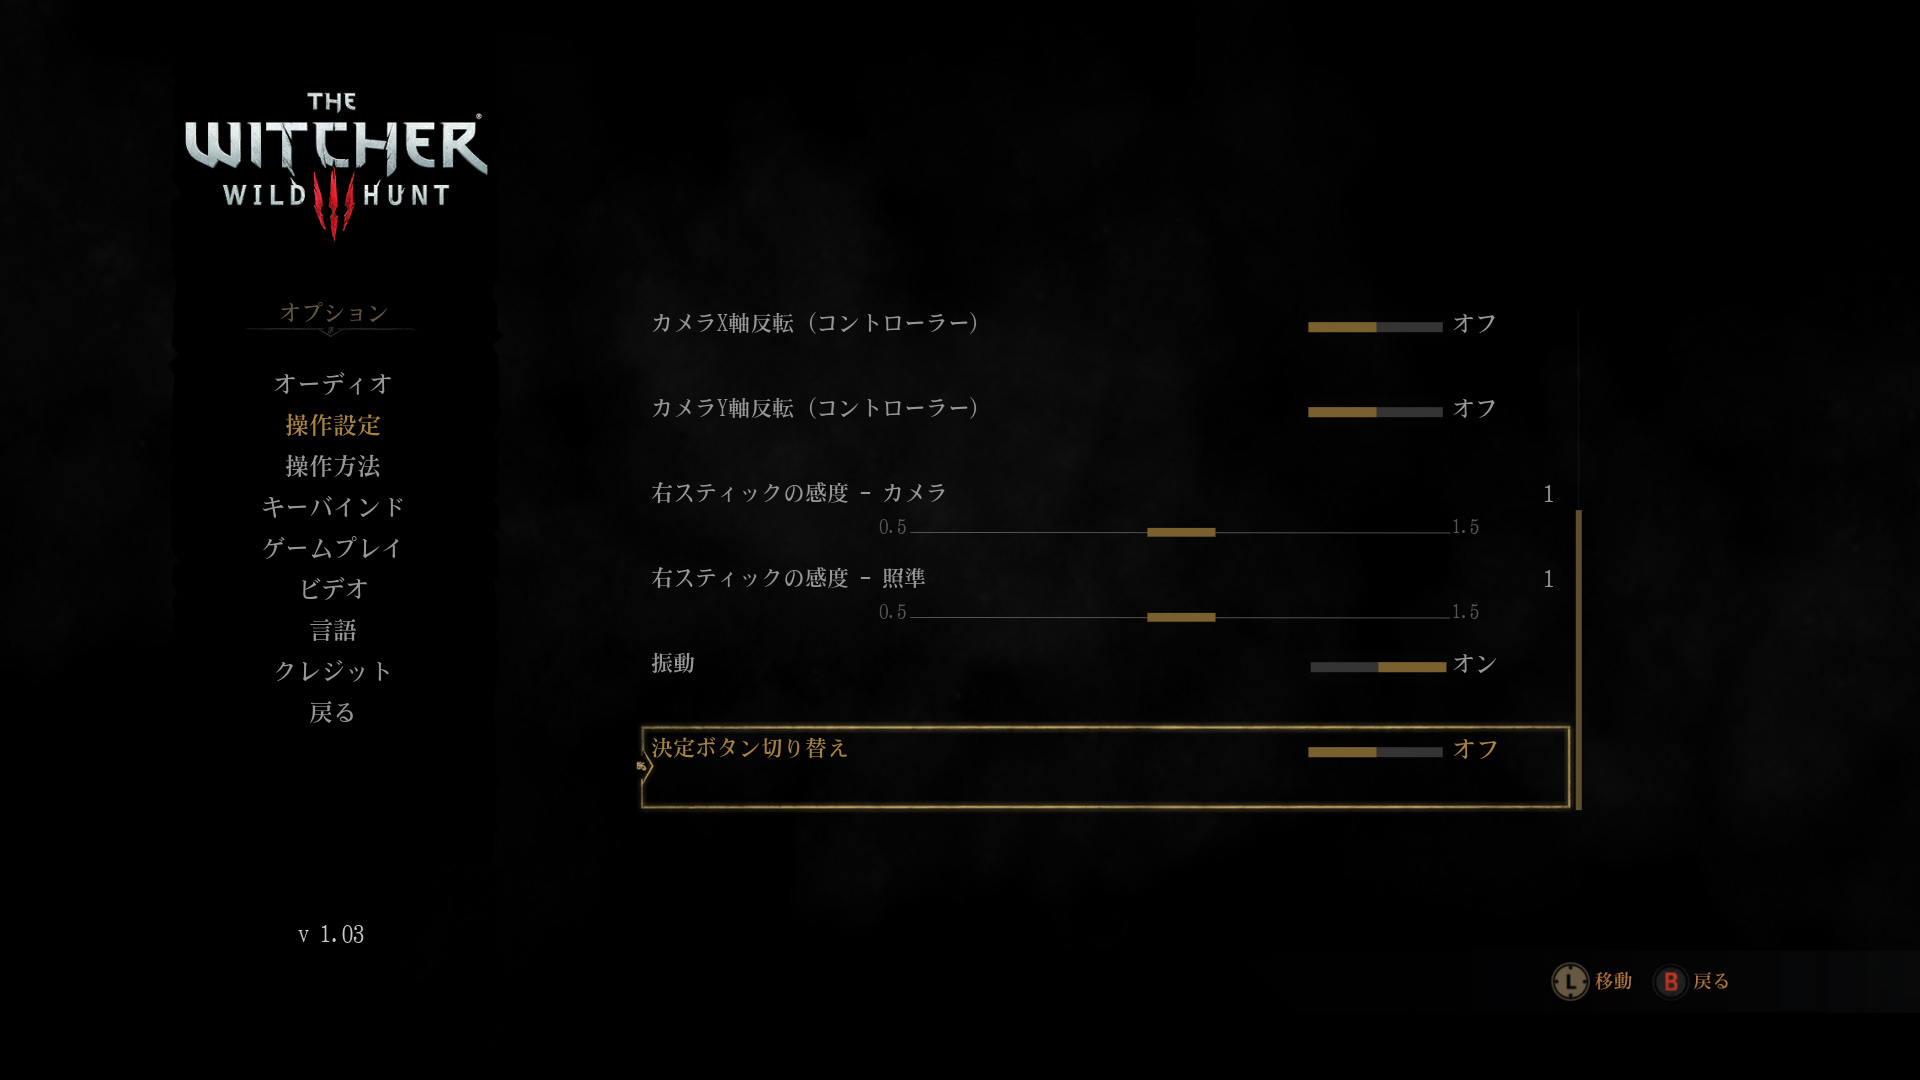 Pc版 The Witcher 3 ウィッチャー3をゲームパッドでプレイする方法 Puroom ぷるのおへや